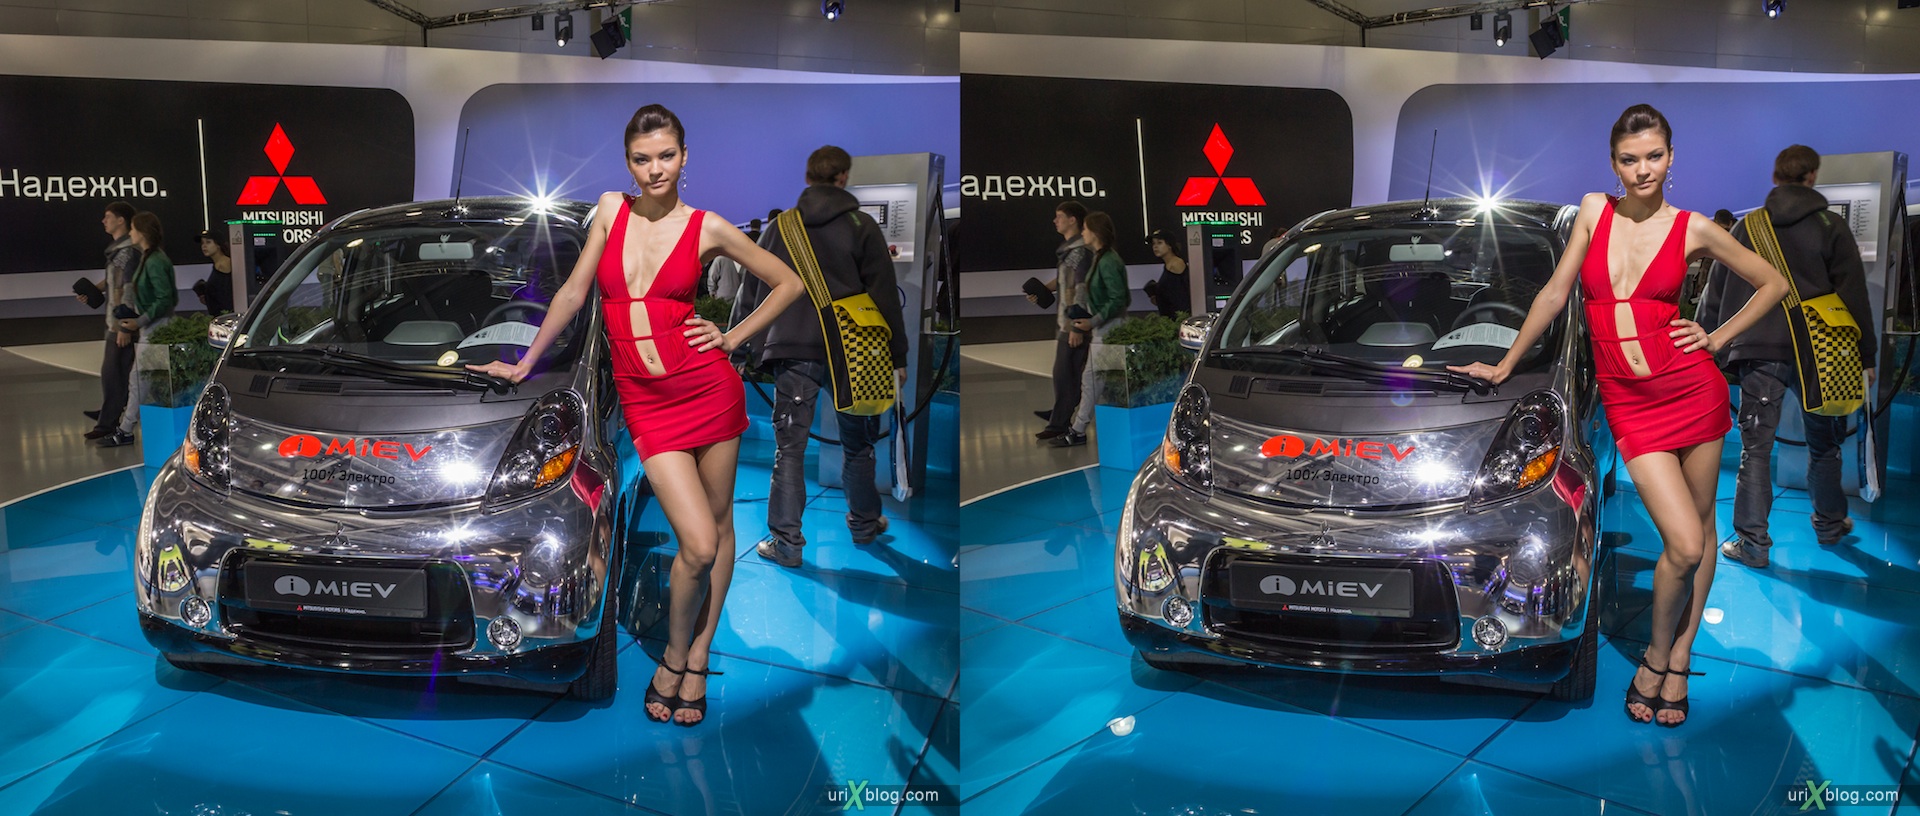 2012, i-Miev electro, девушка, модель, Московский международный автомобильный салон, ММАС, Крокус Экспо, 3D, стереопара